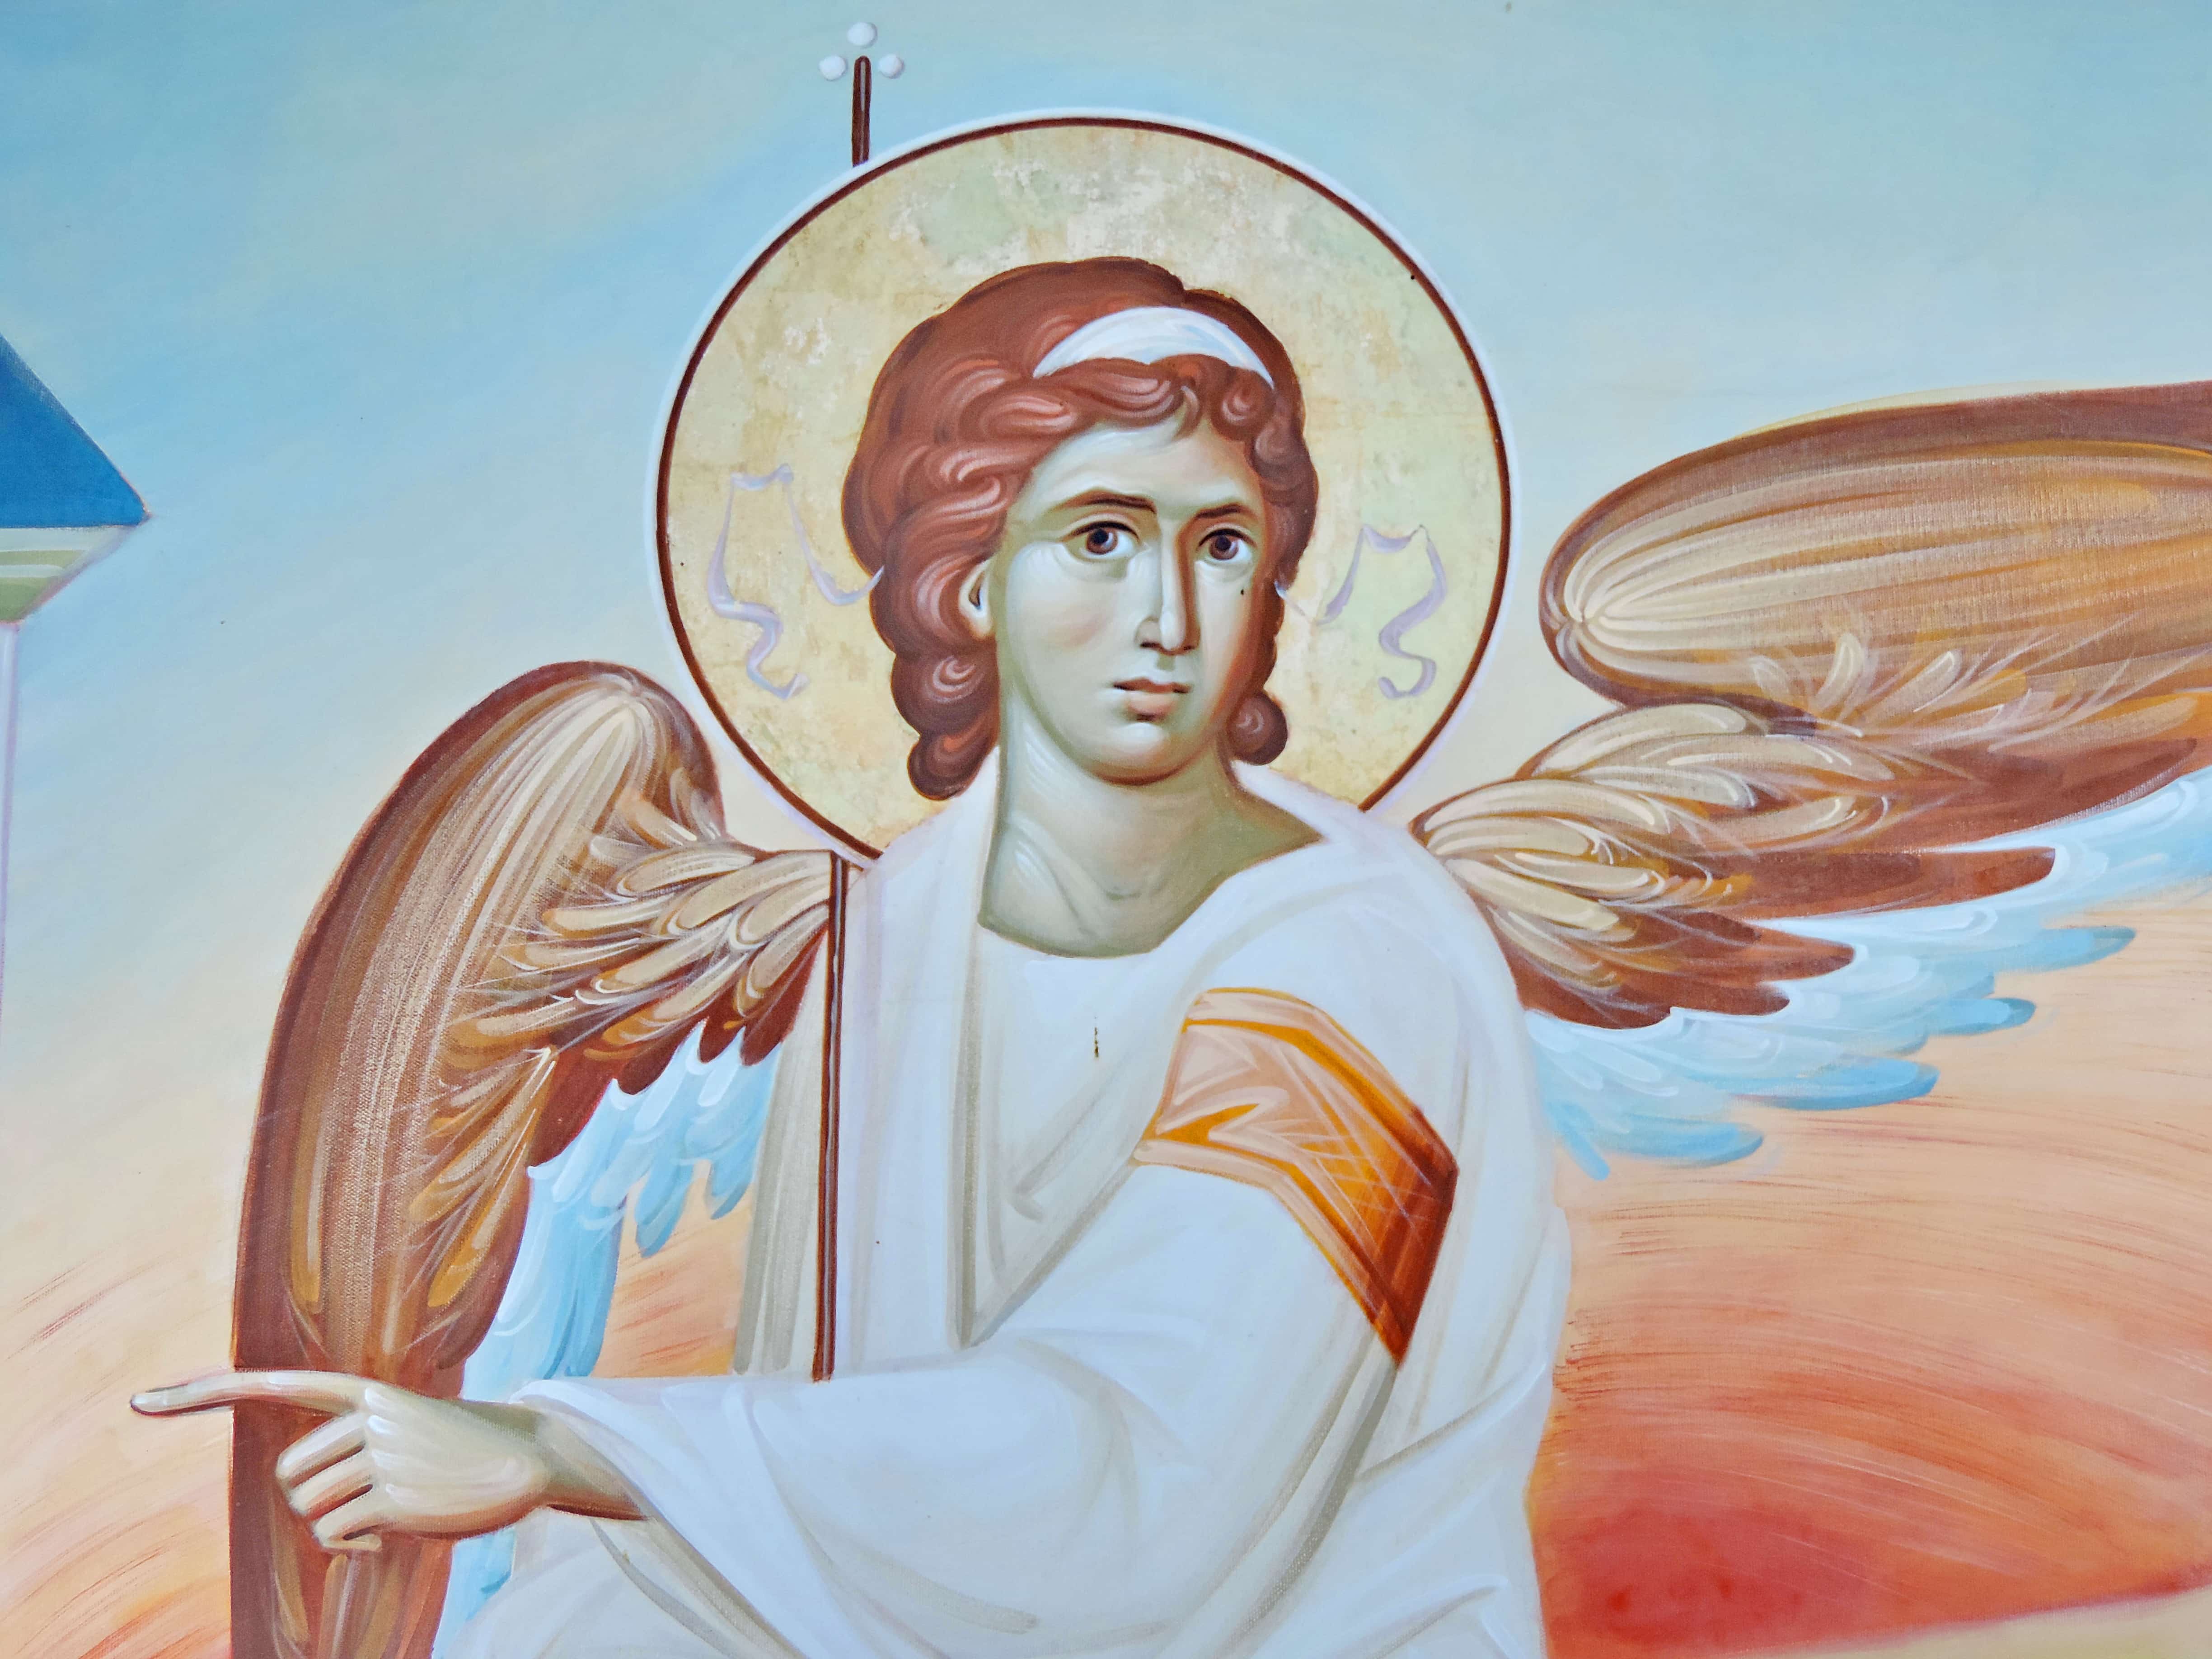 Ангелы святого человека. Архангел Уриил. Ангел-хранитель икона Православие. Ангел иконопись Православие. Ангел Господень (богословие).